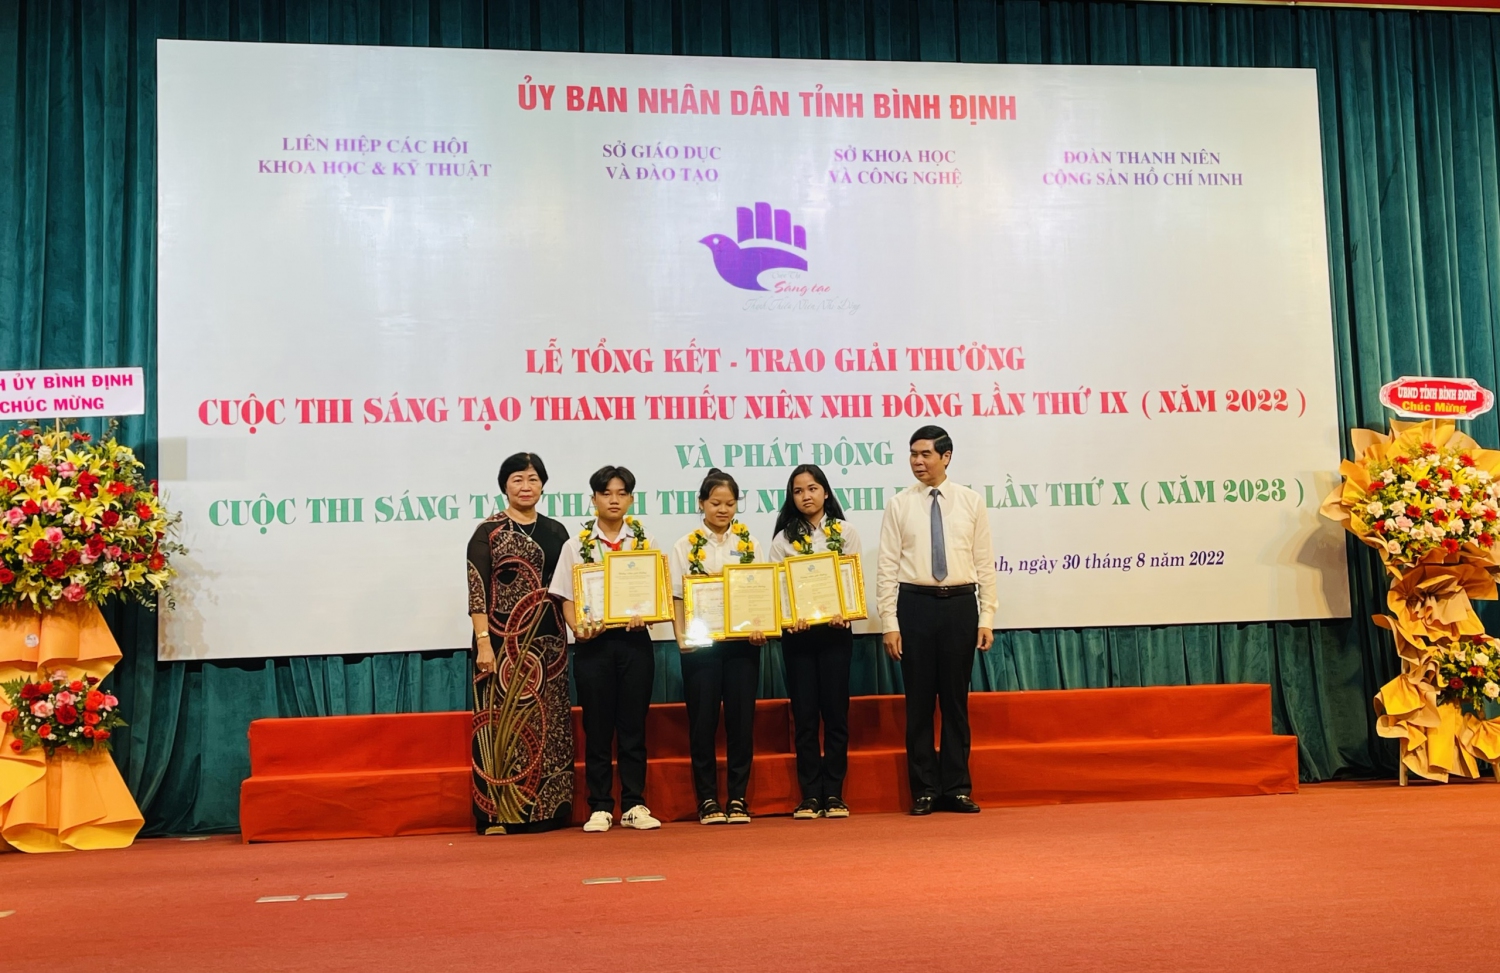 Ông Lâm Hải Giang - Phó Chủ tịch UBND tỉnh và bà Nguyễn Thị Thanh Bình - Chủ tịch Liên hiệp các Hội KH&KT tỉnh trao giải cho các tác giả đoạt giải nhất Cuộc thi